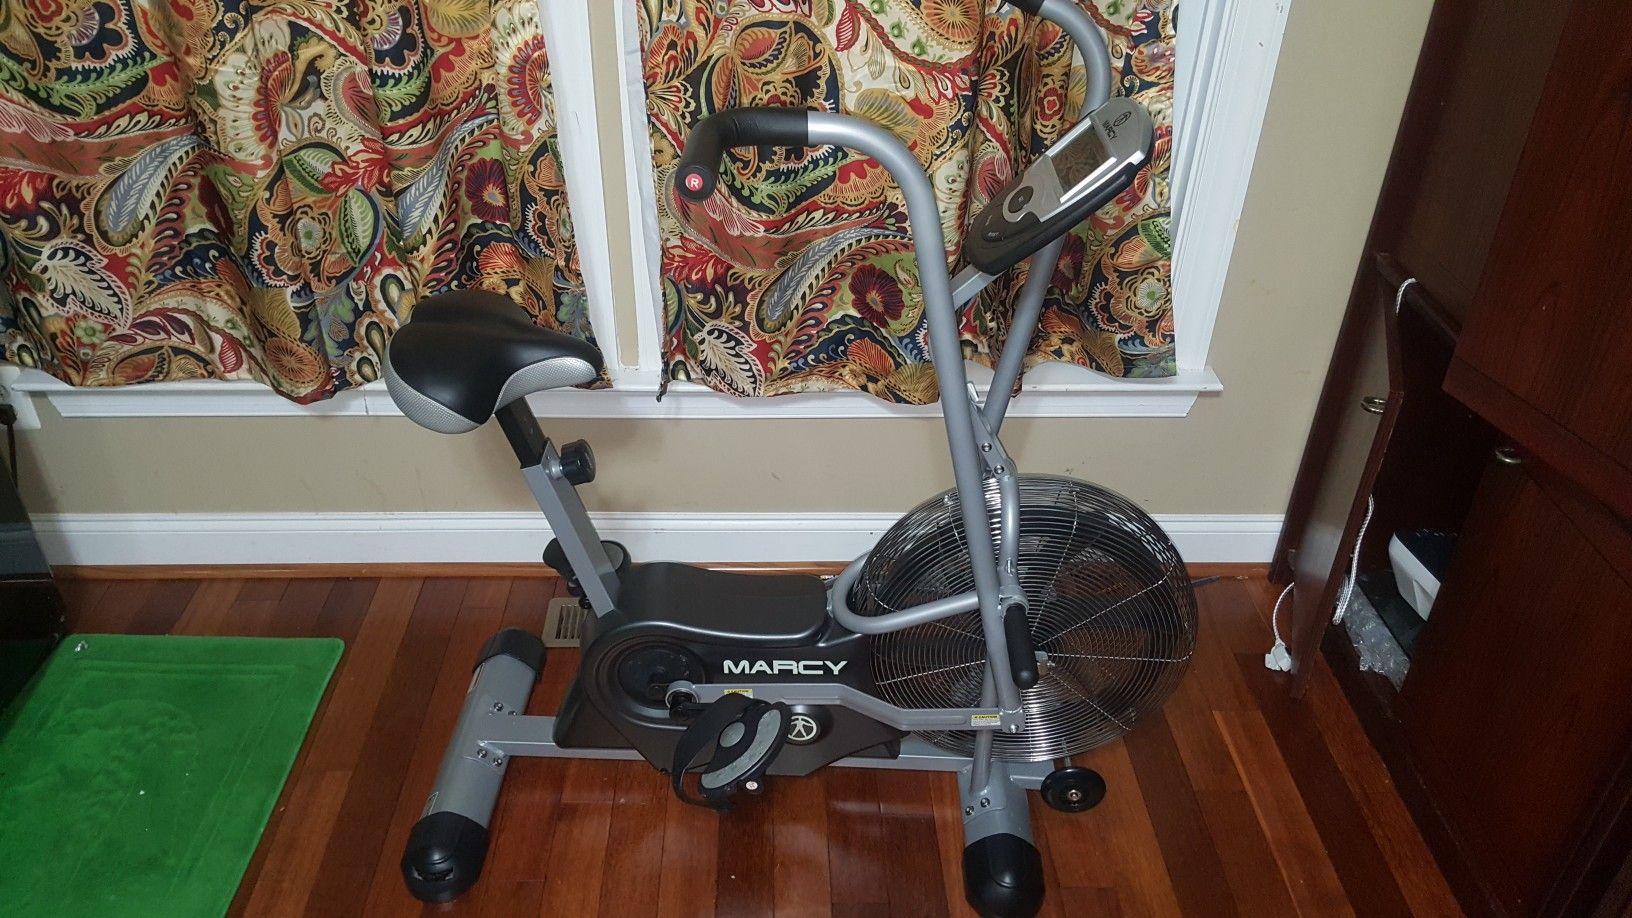 Marcy upright cardio exercise bike